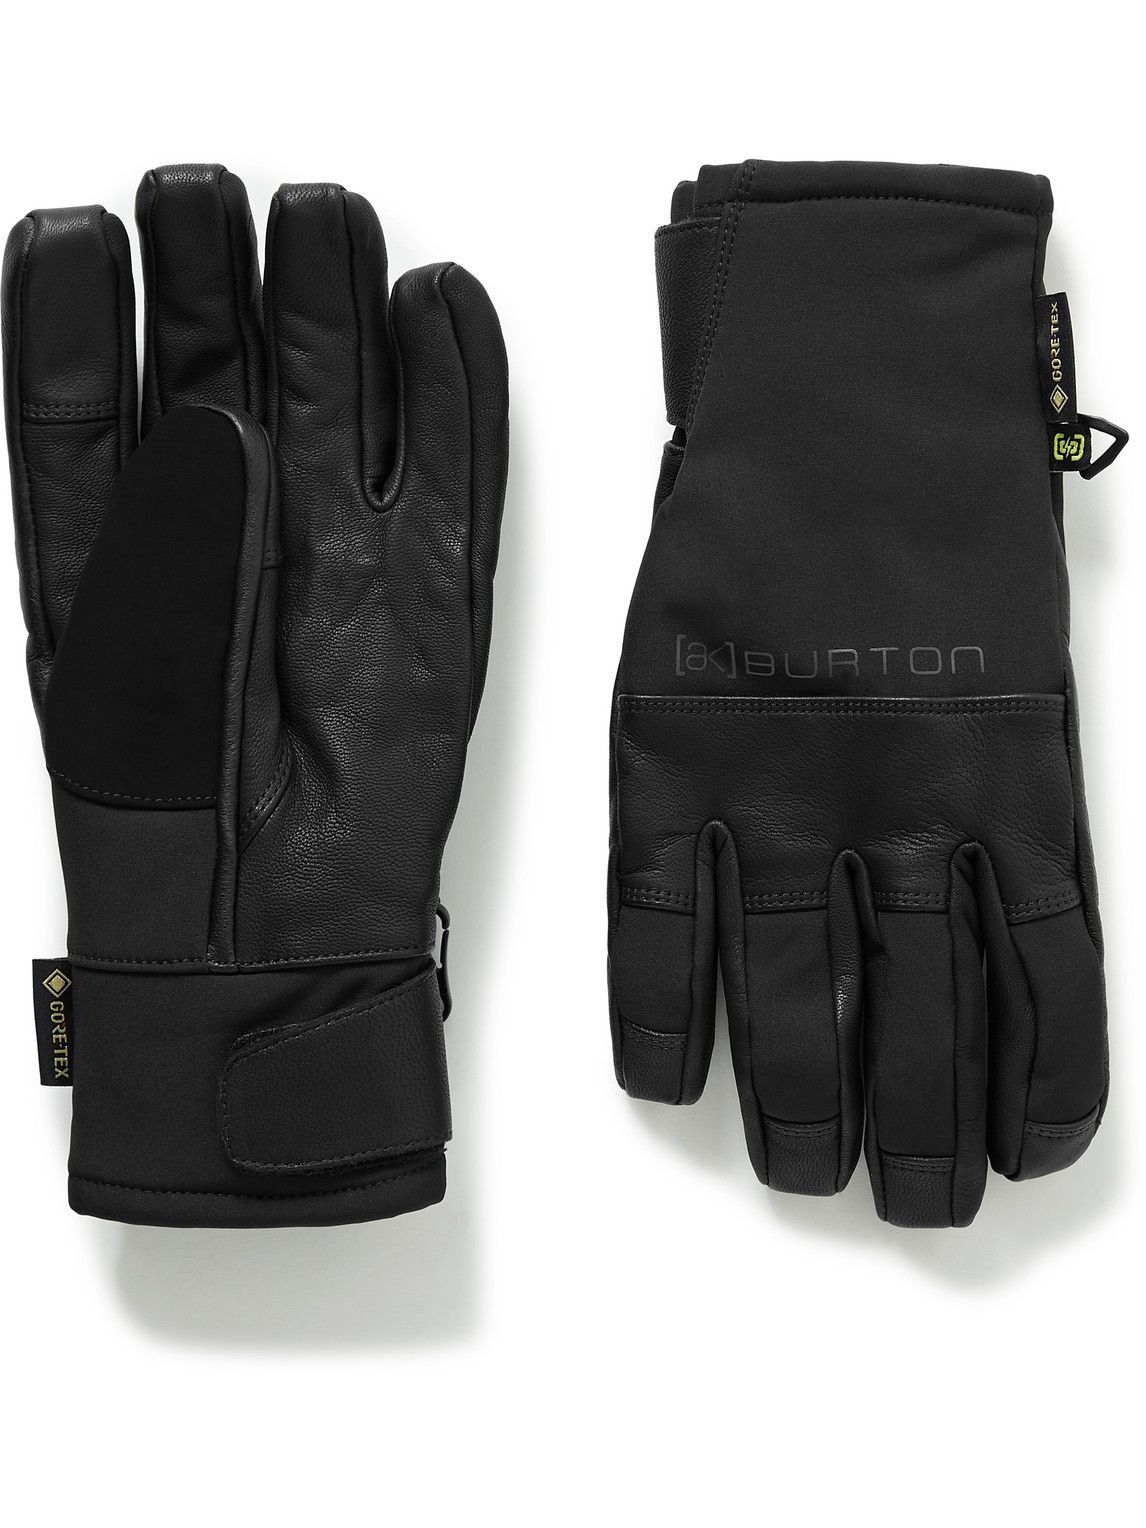 Onbevredigend overschot Rechtdoor BURTON - [ak] Clutch Leather-Panelled GORE‑TEX Ski Gloves - Black Burton